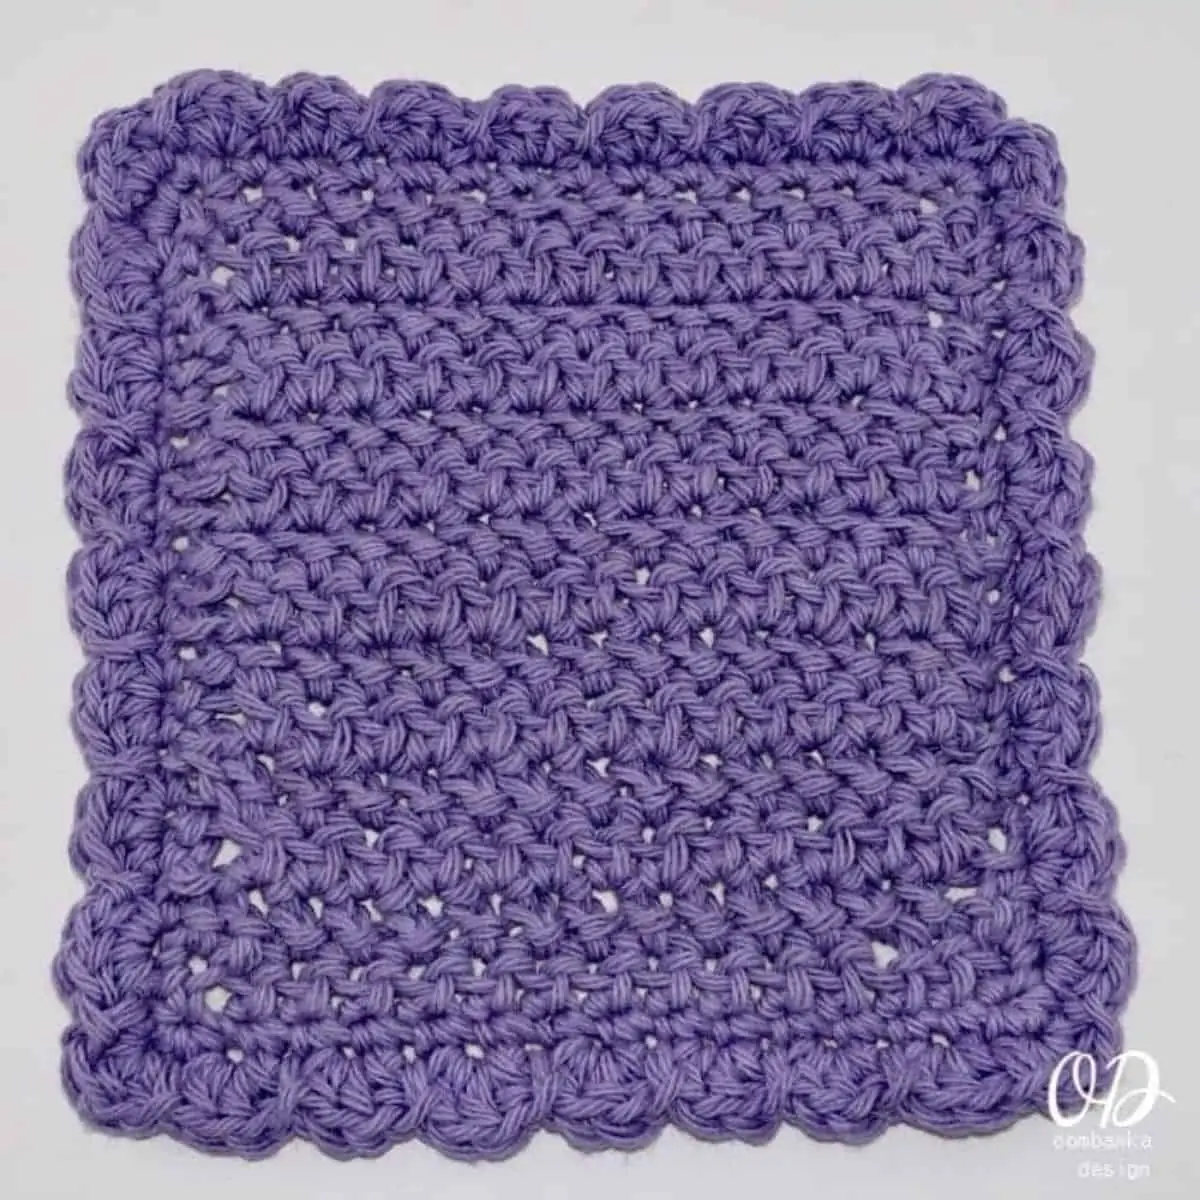 pretty purple dishcloth with a shell stitch border